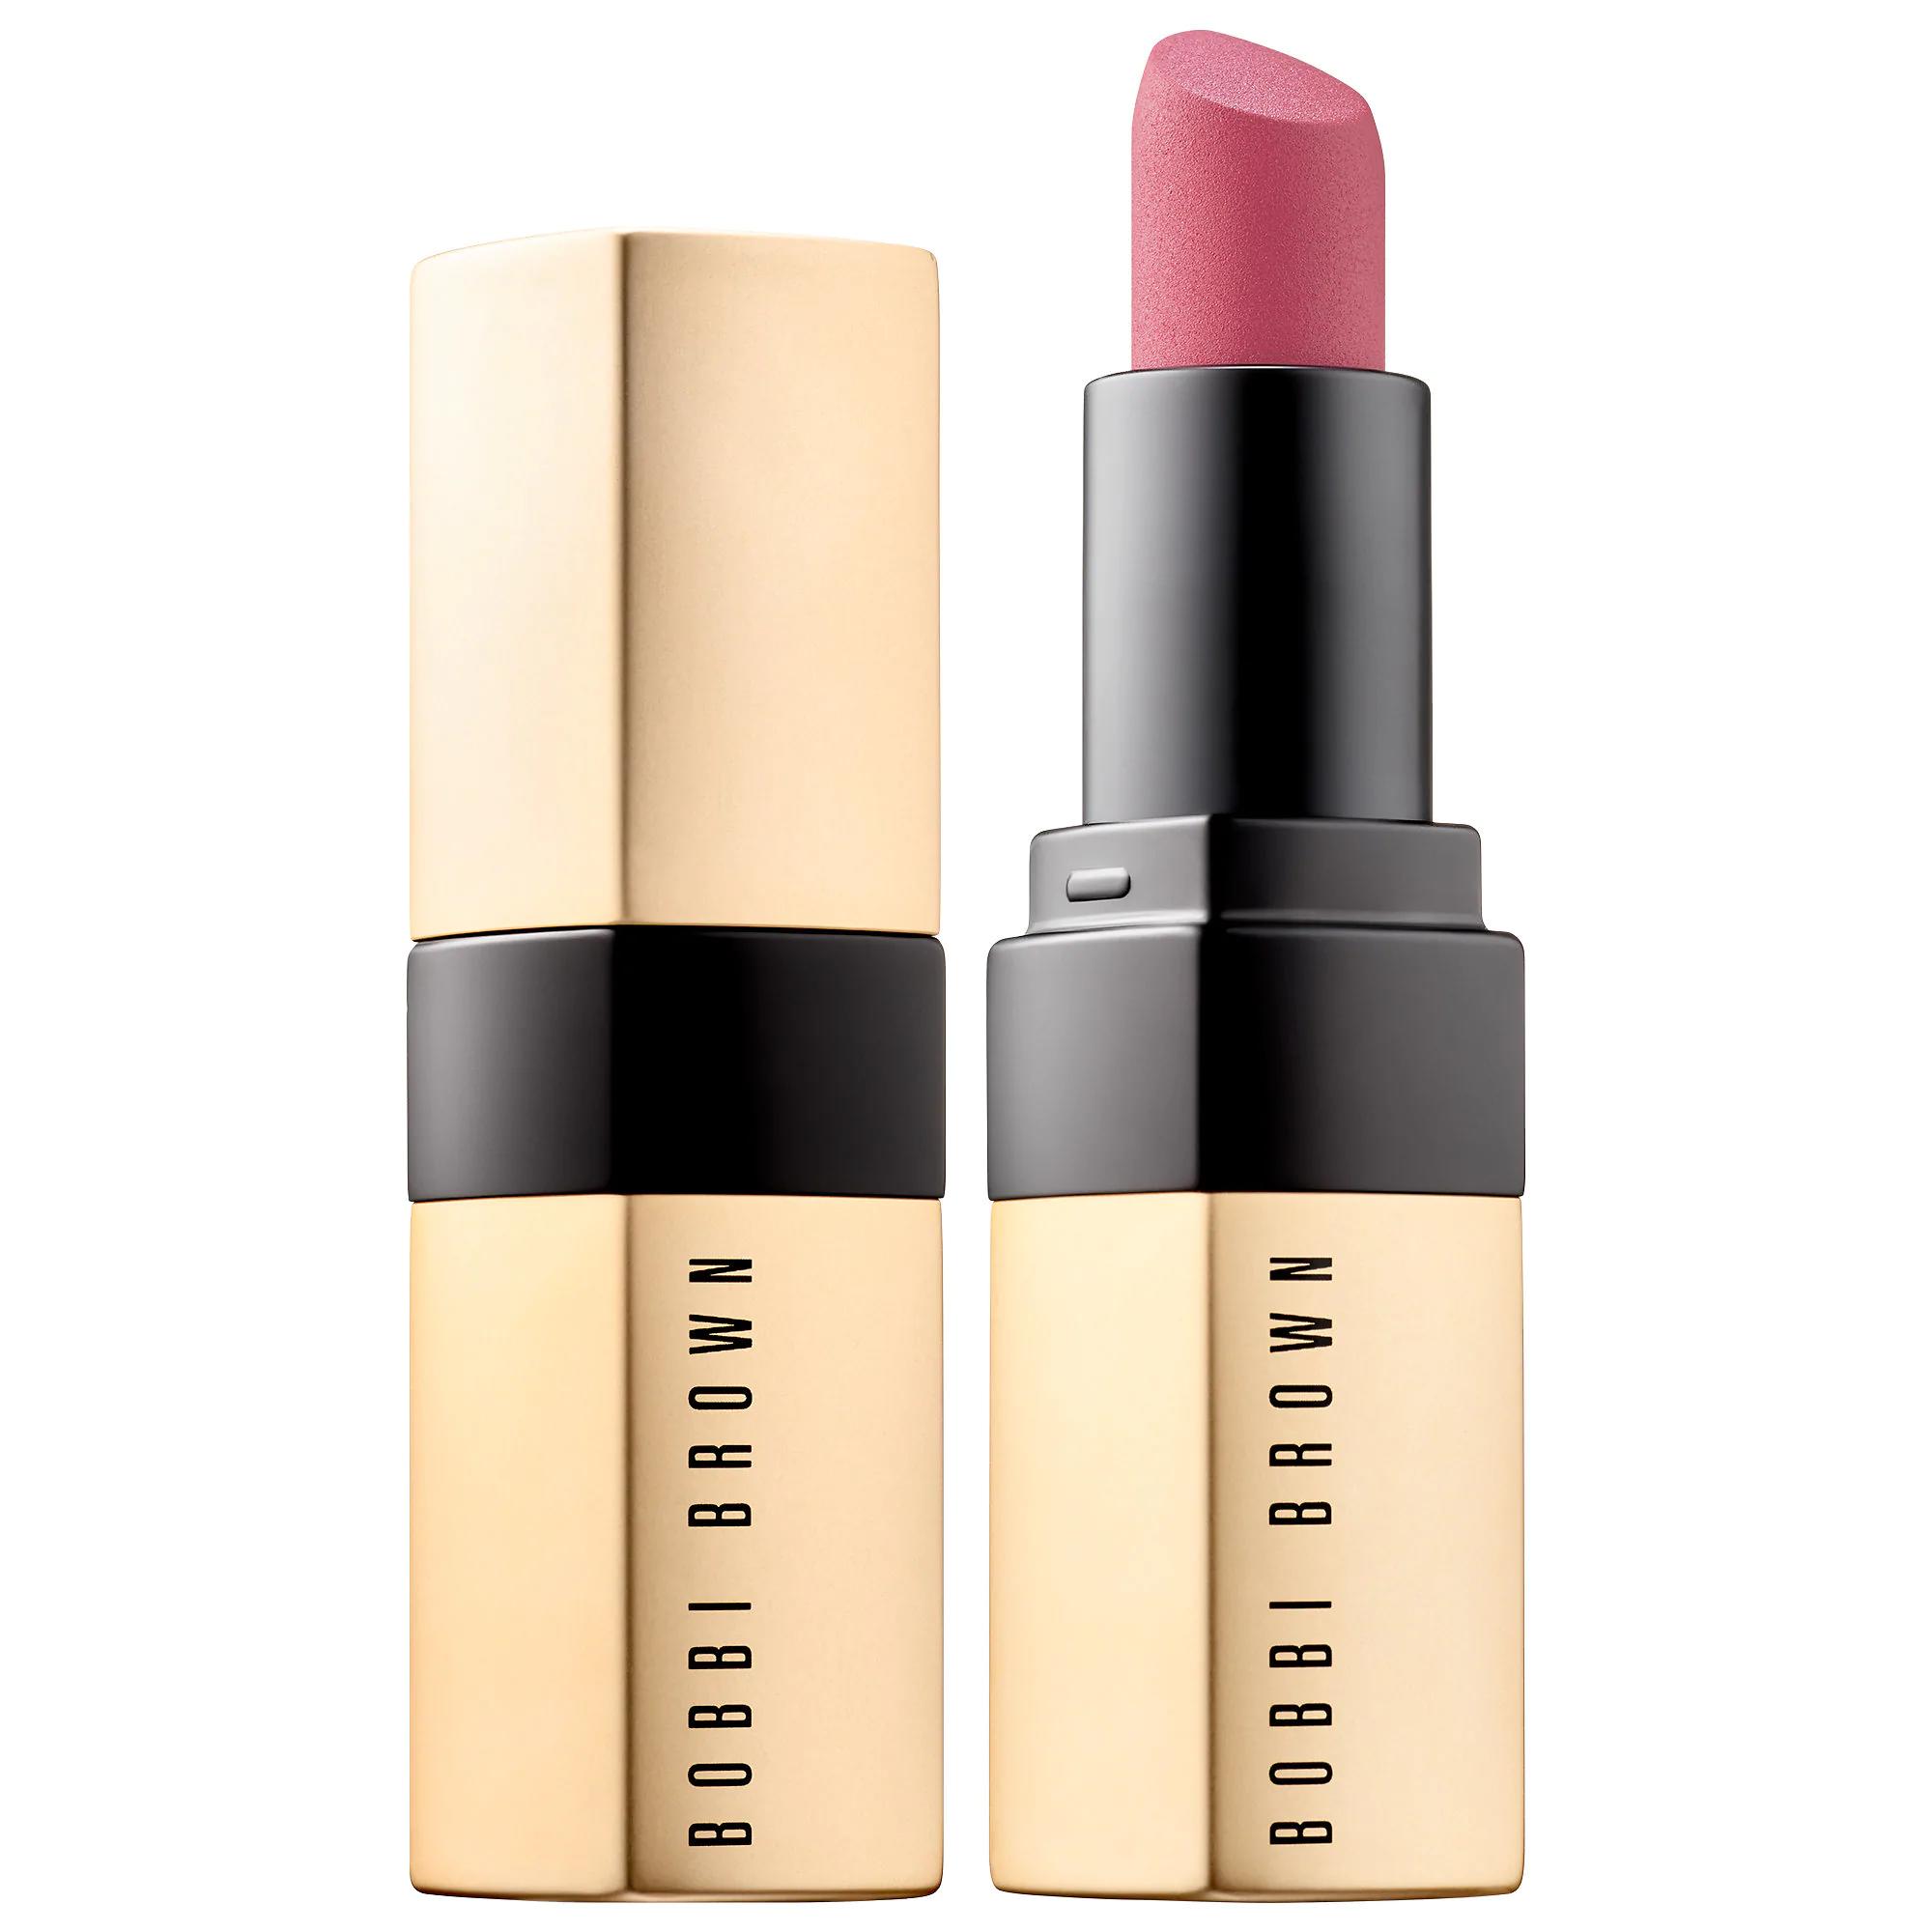 Bobbi Brown Luxe Matte Lipstick Mauve Over | Glambot.com ...
